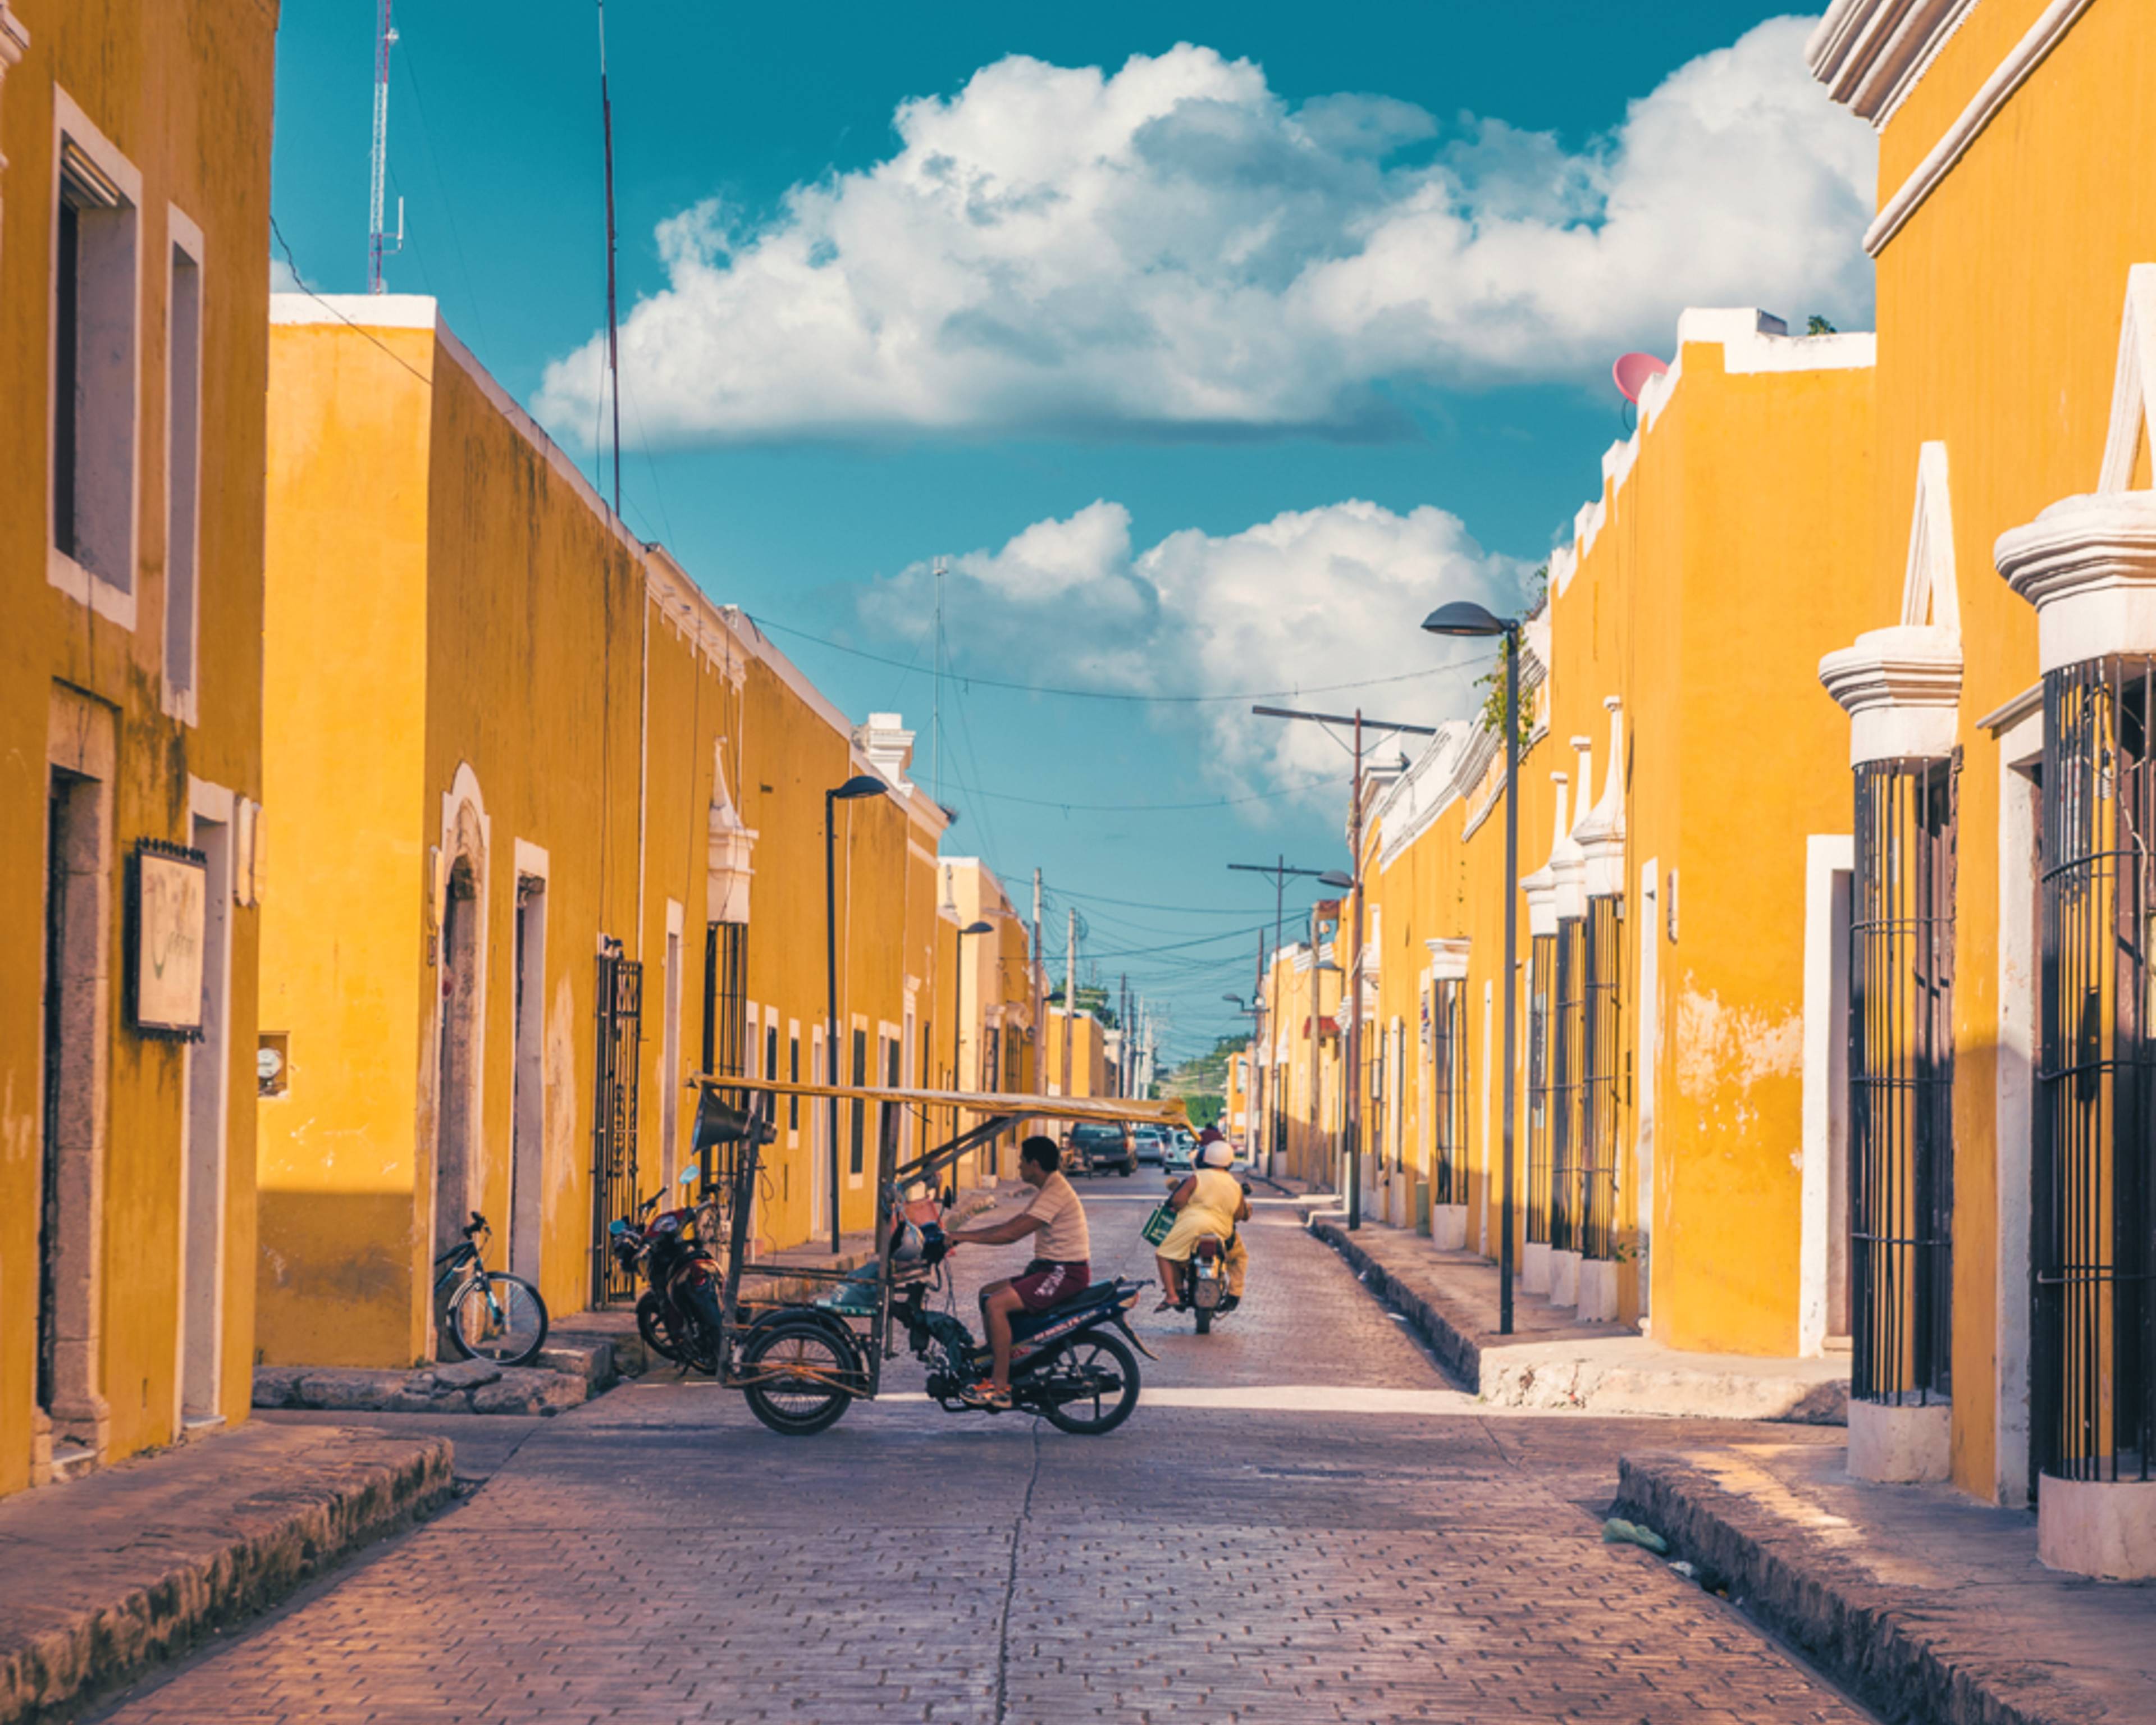 Städtereise Mexiko - Reise jetzt individuell gestalten